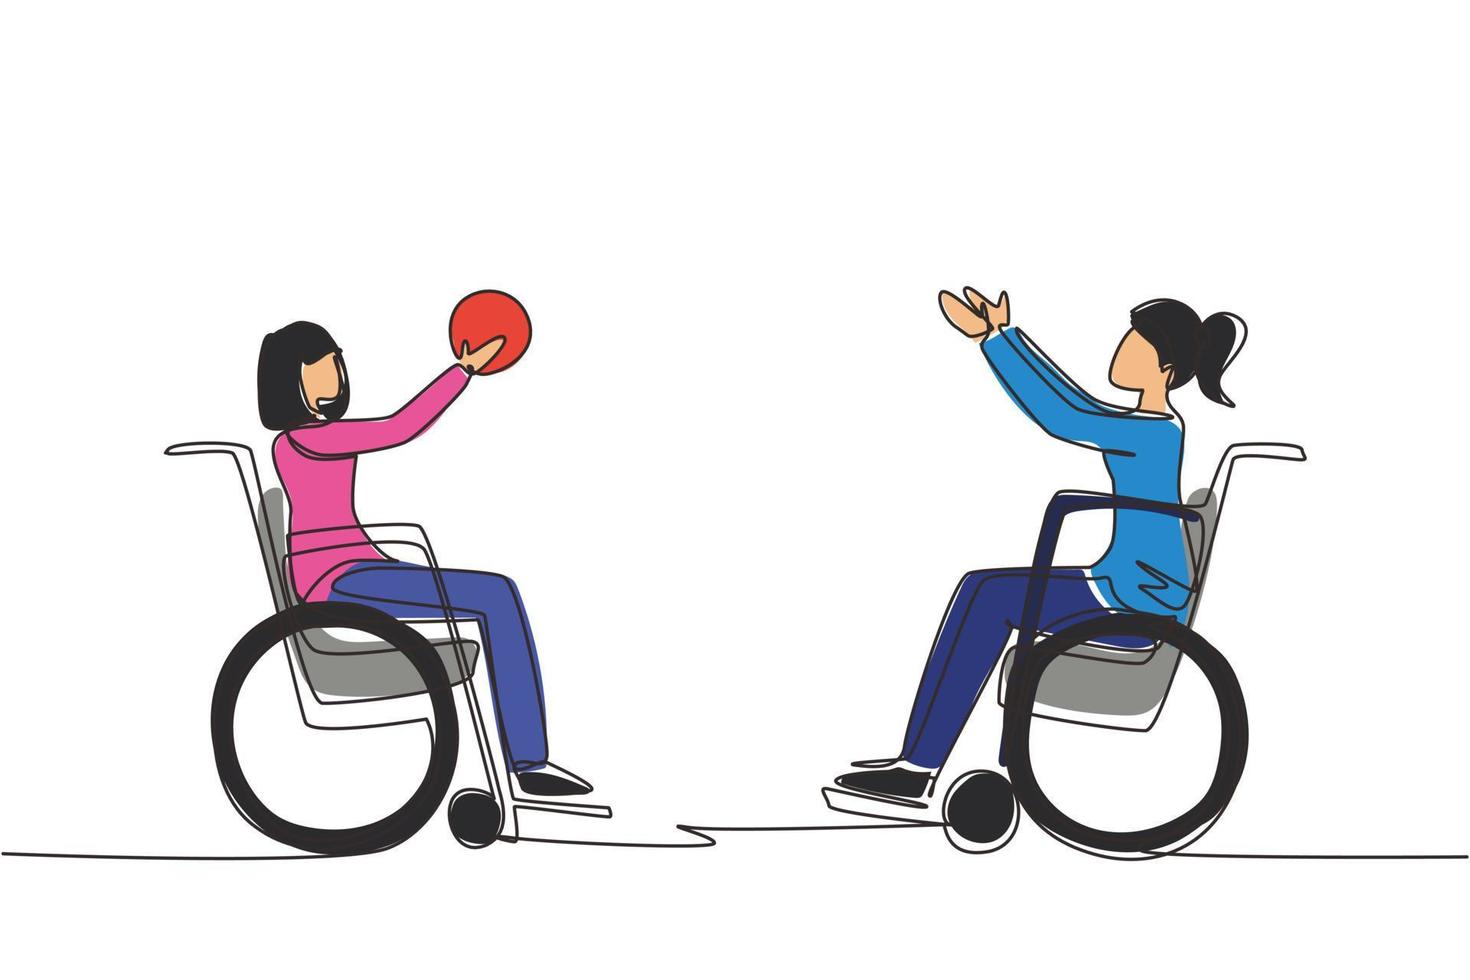 única linha de desenho alegre jovem com deficiência em cadeira de rodas jogando basquete. conceito de esportes adaptativos para pessoas com deficiência. ilustração em vetor gráfico de desenho de linha contínua moderna